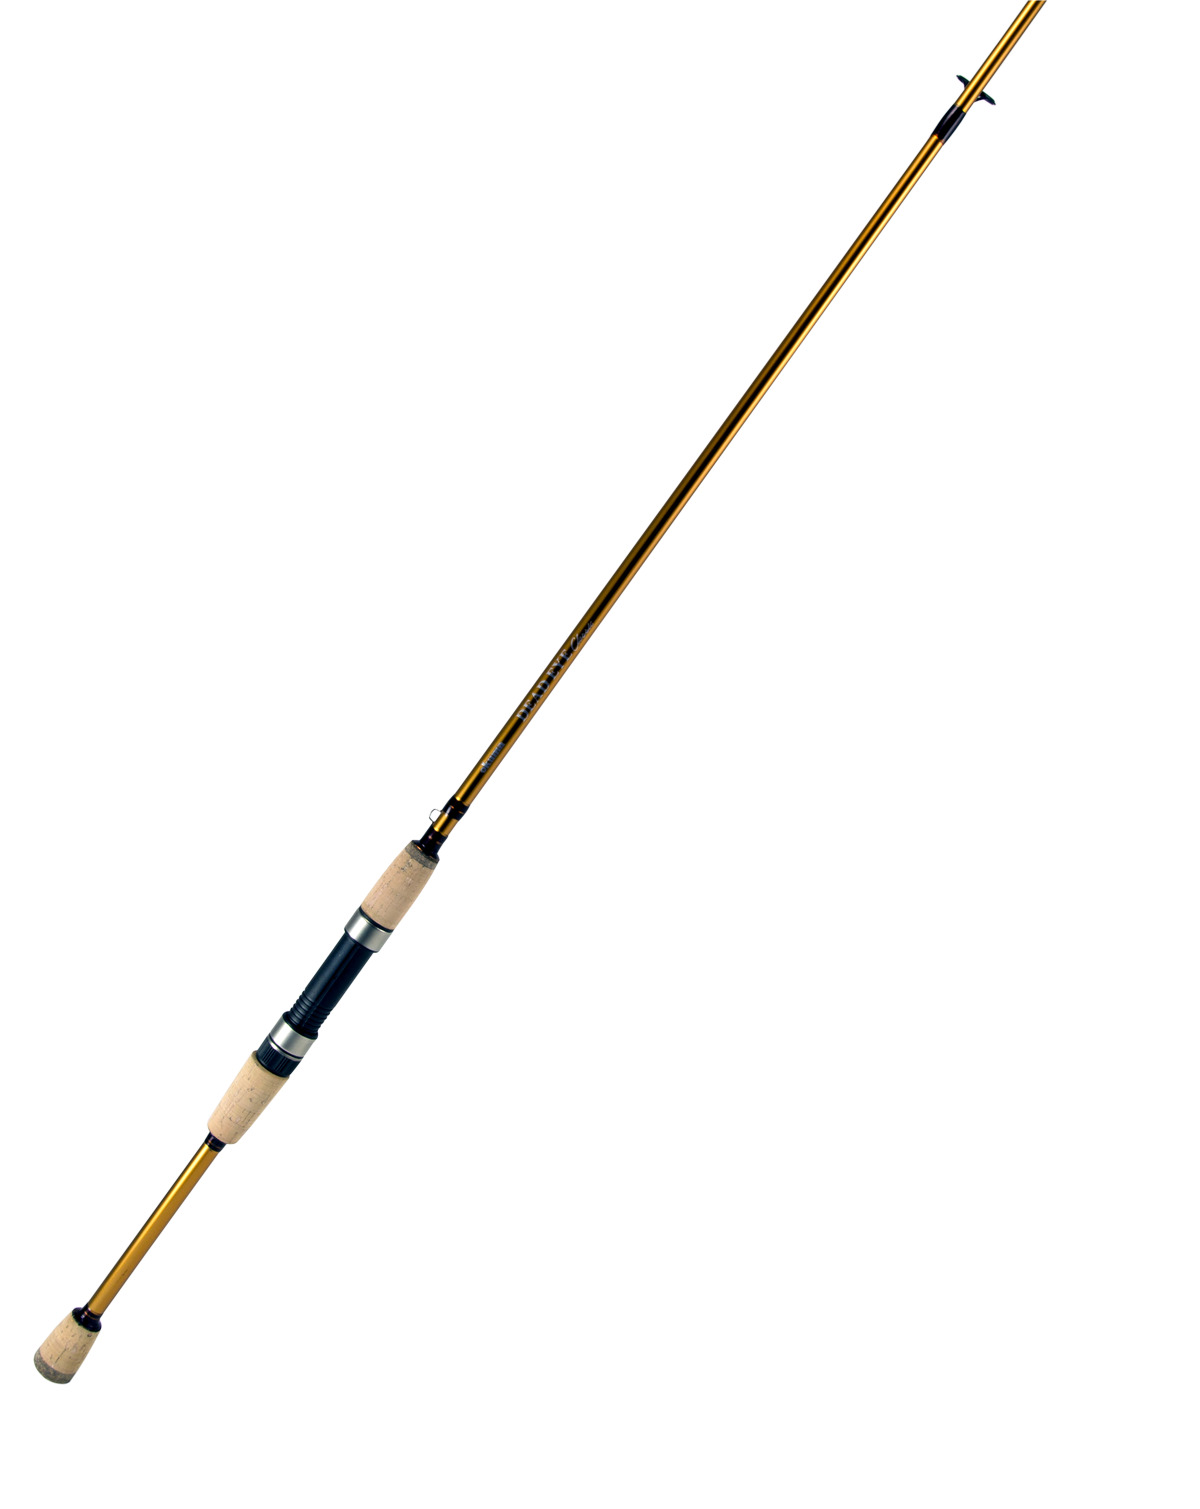 Okuma Dead Eye Classic Walleye Rod, Casting Medium 1-Tele 10-17 lbs  1/4-2-1/2oz DEC-C-7101M-T , $3.00 Off with Free S&H — CampSaver